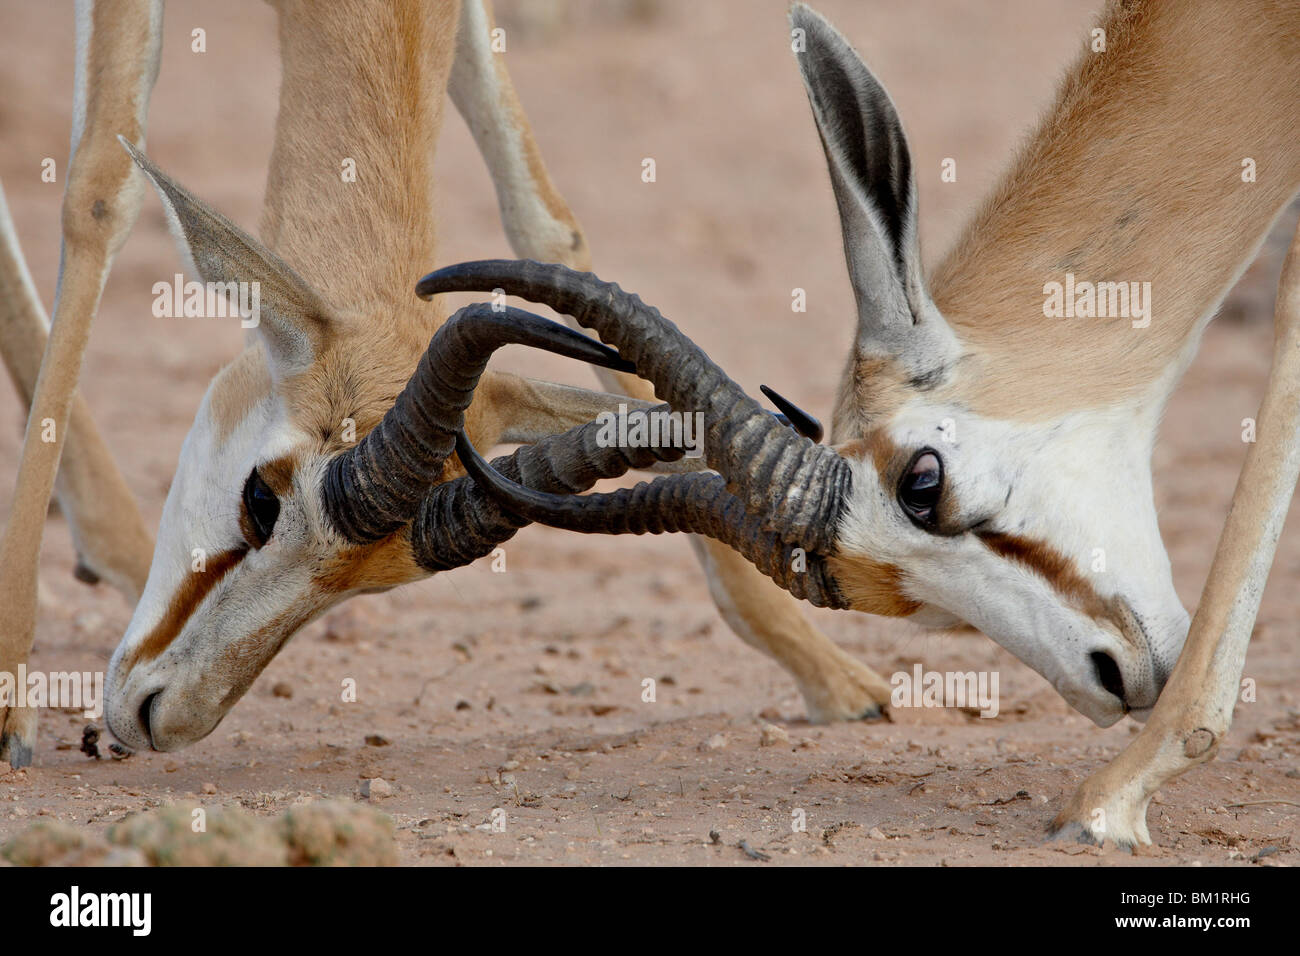 Deux hommes springbok (Antidorcas marsupialis) sparring, Kgalagadi Transfrontier Park, Afrique du Sud Banque D'Images